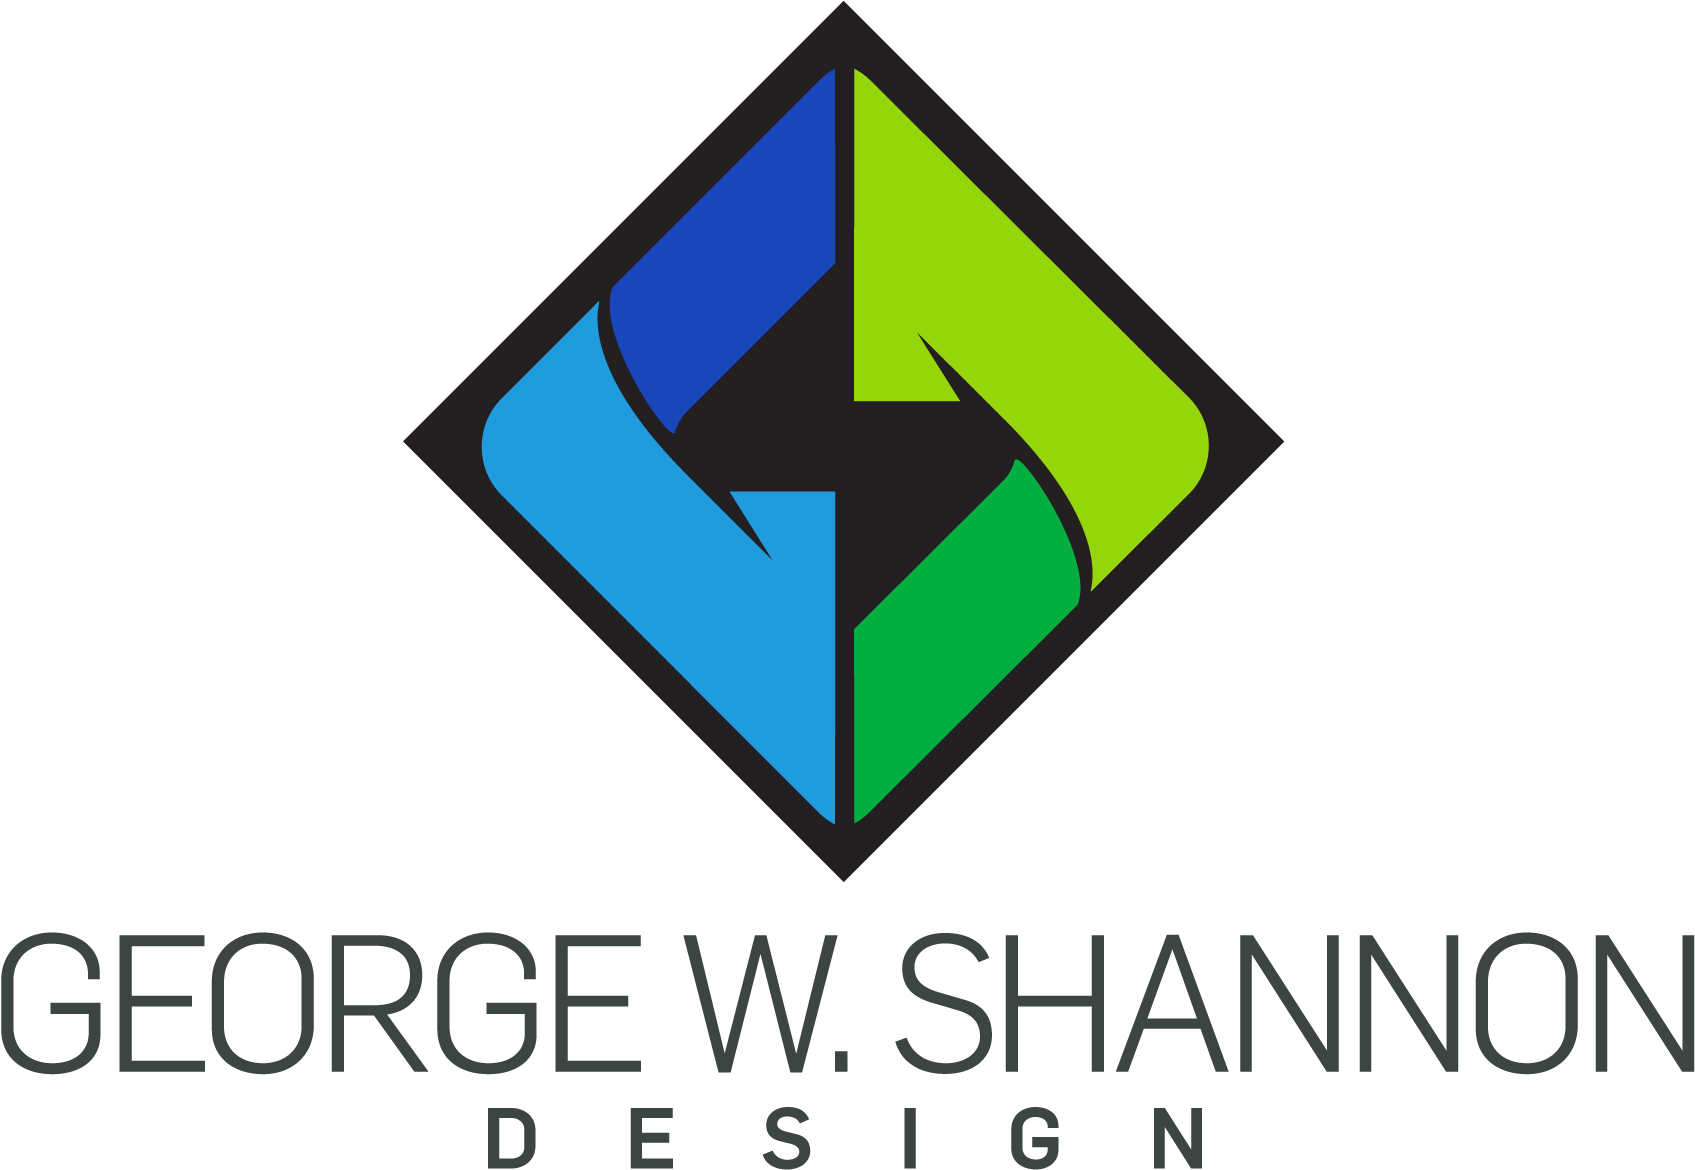 George W Shannon Designs Logo - George W. Shannon Design (2500x1930)